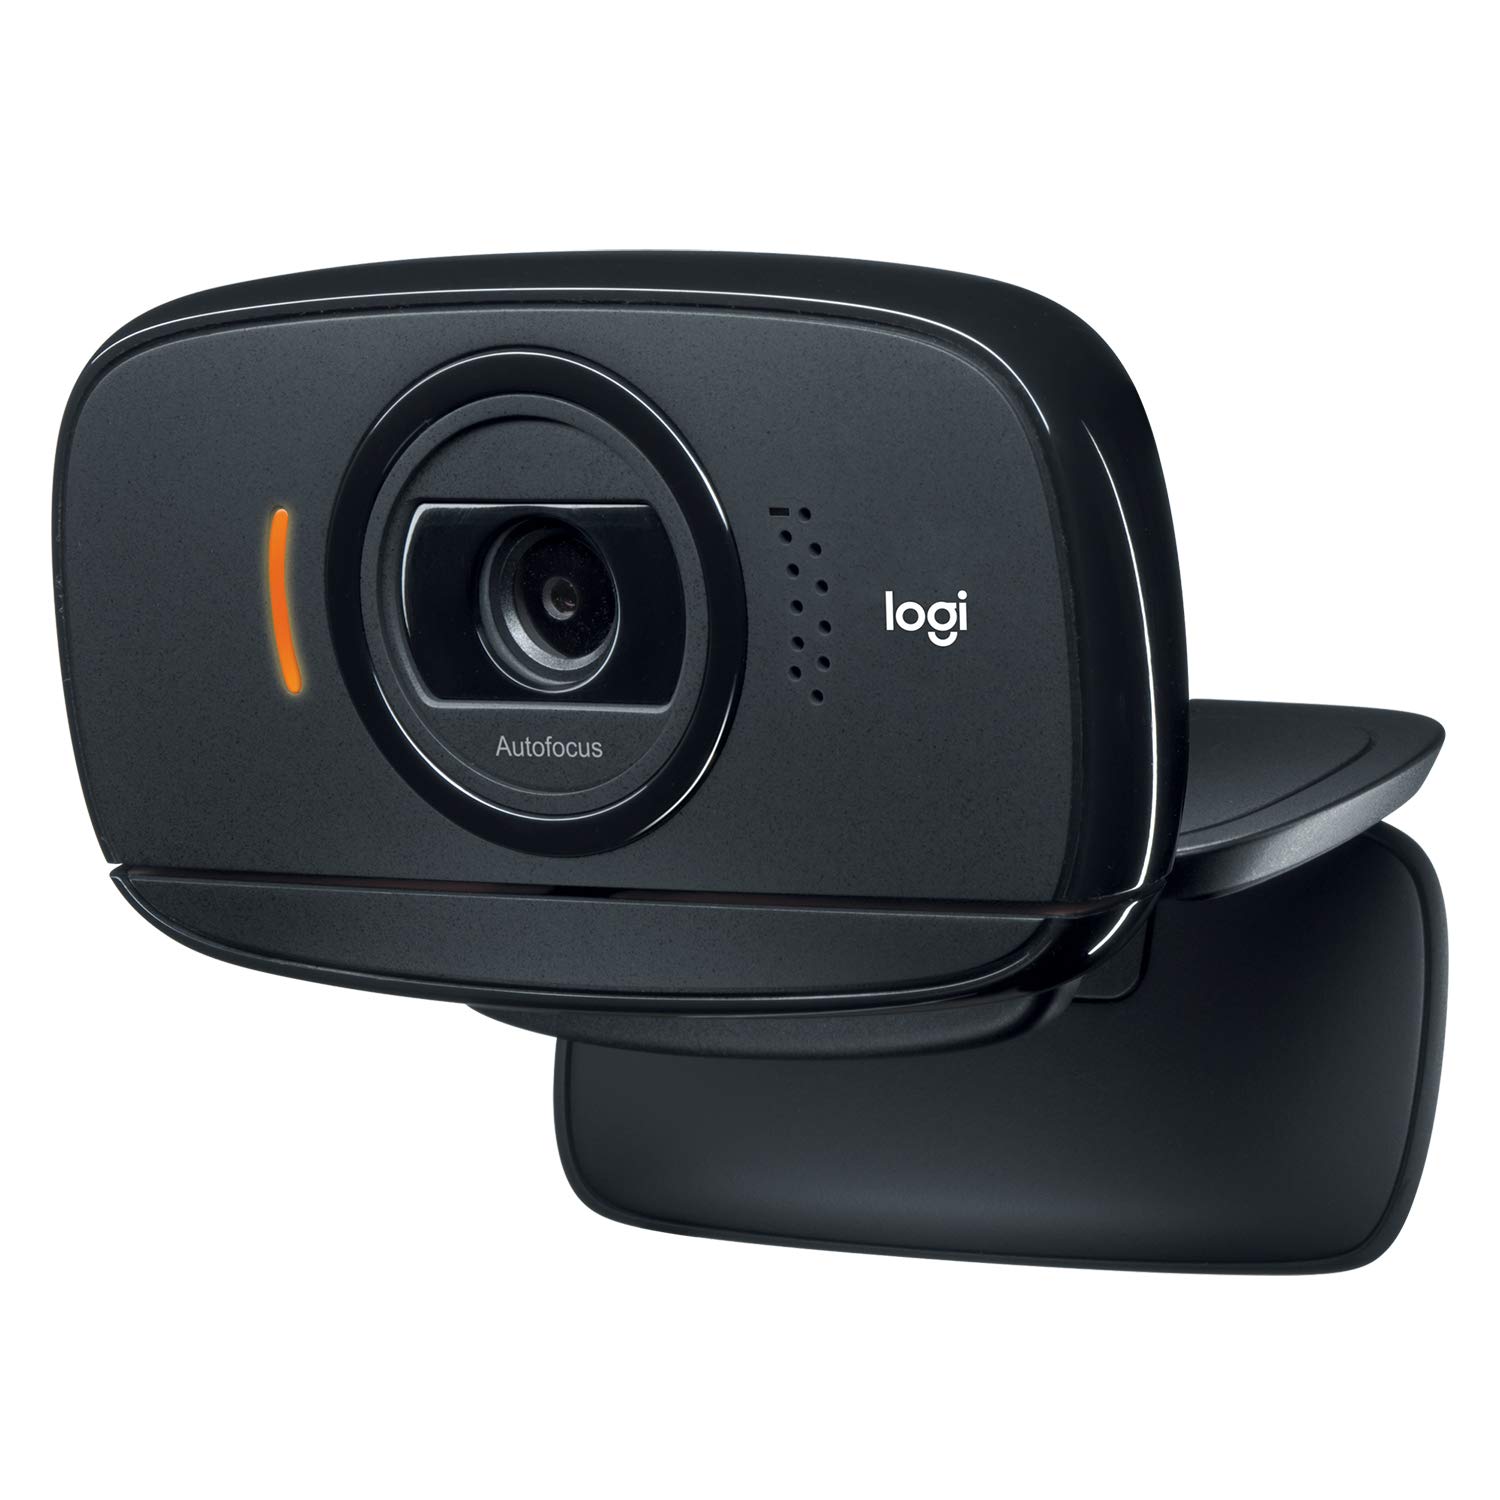 ロジクール ウェブカメラ C525n ブラック HD 720P ウェブカム ストリーミング 折り畳み式 360度回転 国内正規品 2年間メーカー保証